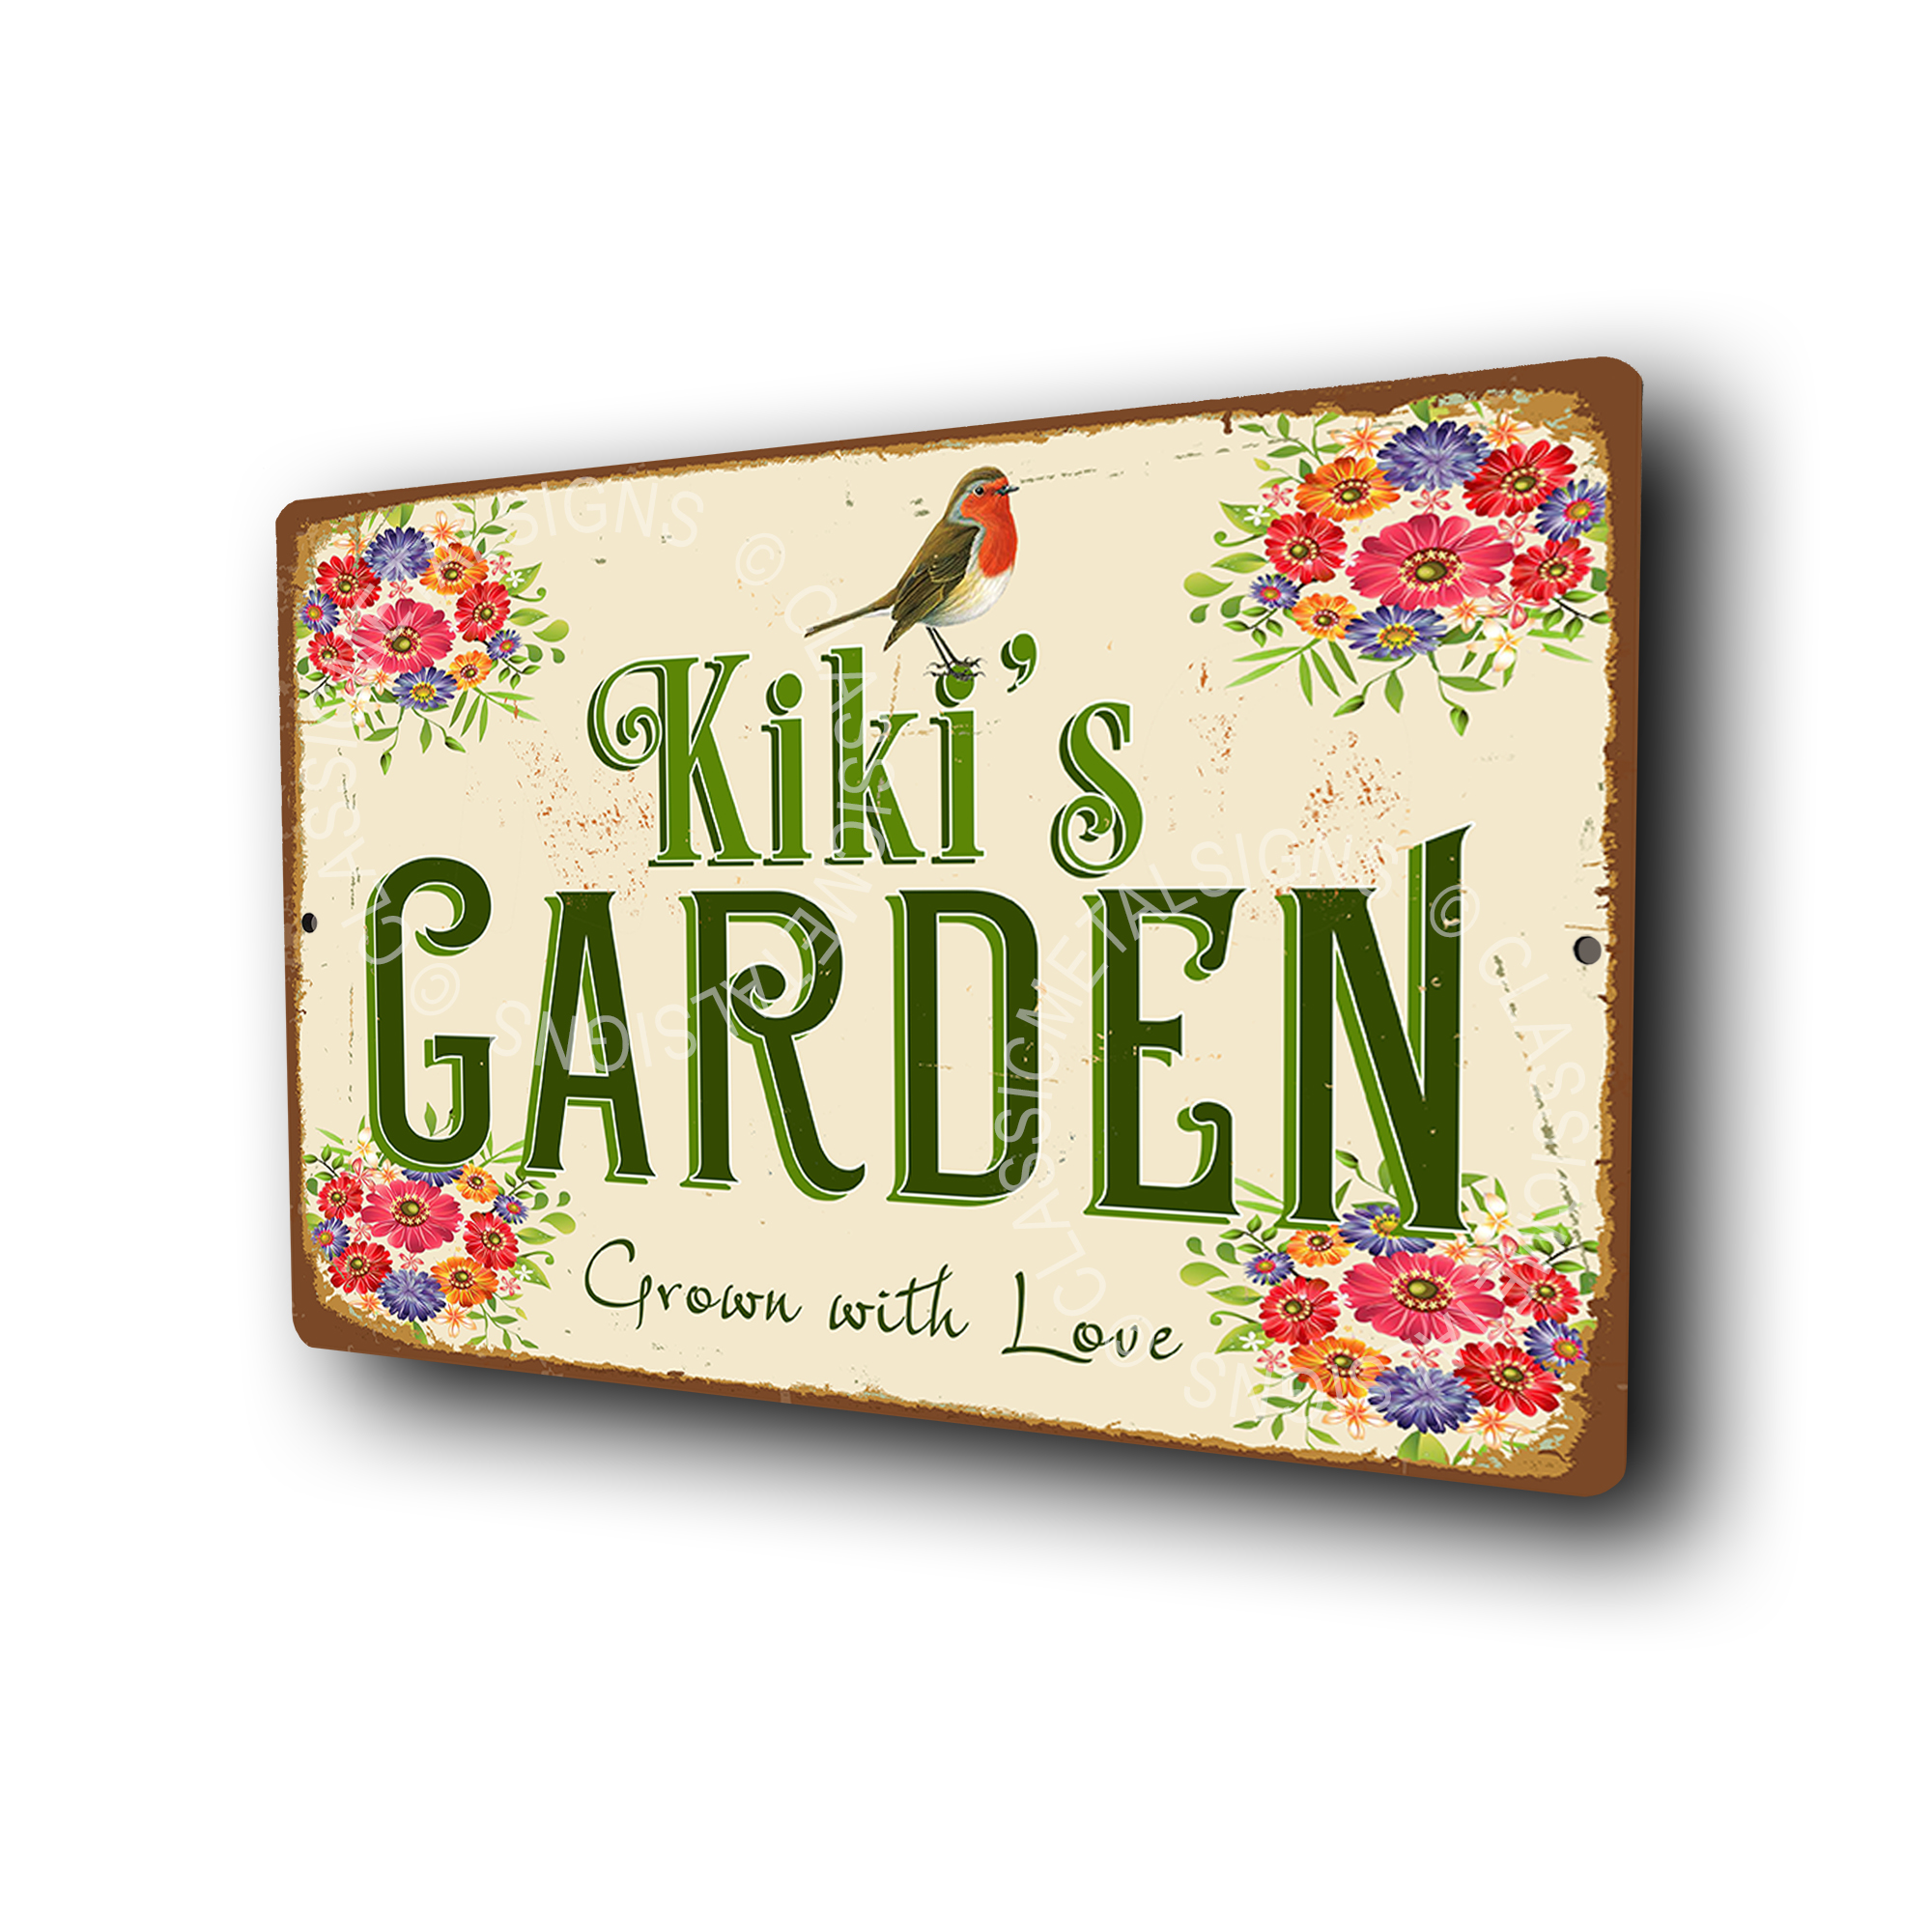 Kiki's Garden Signs